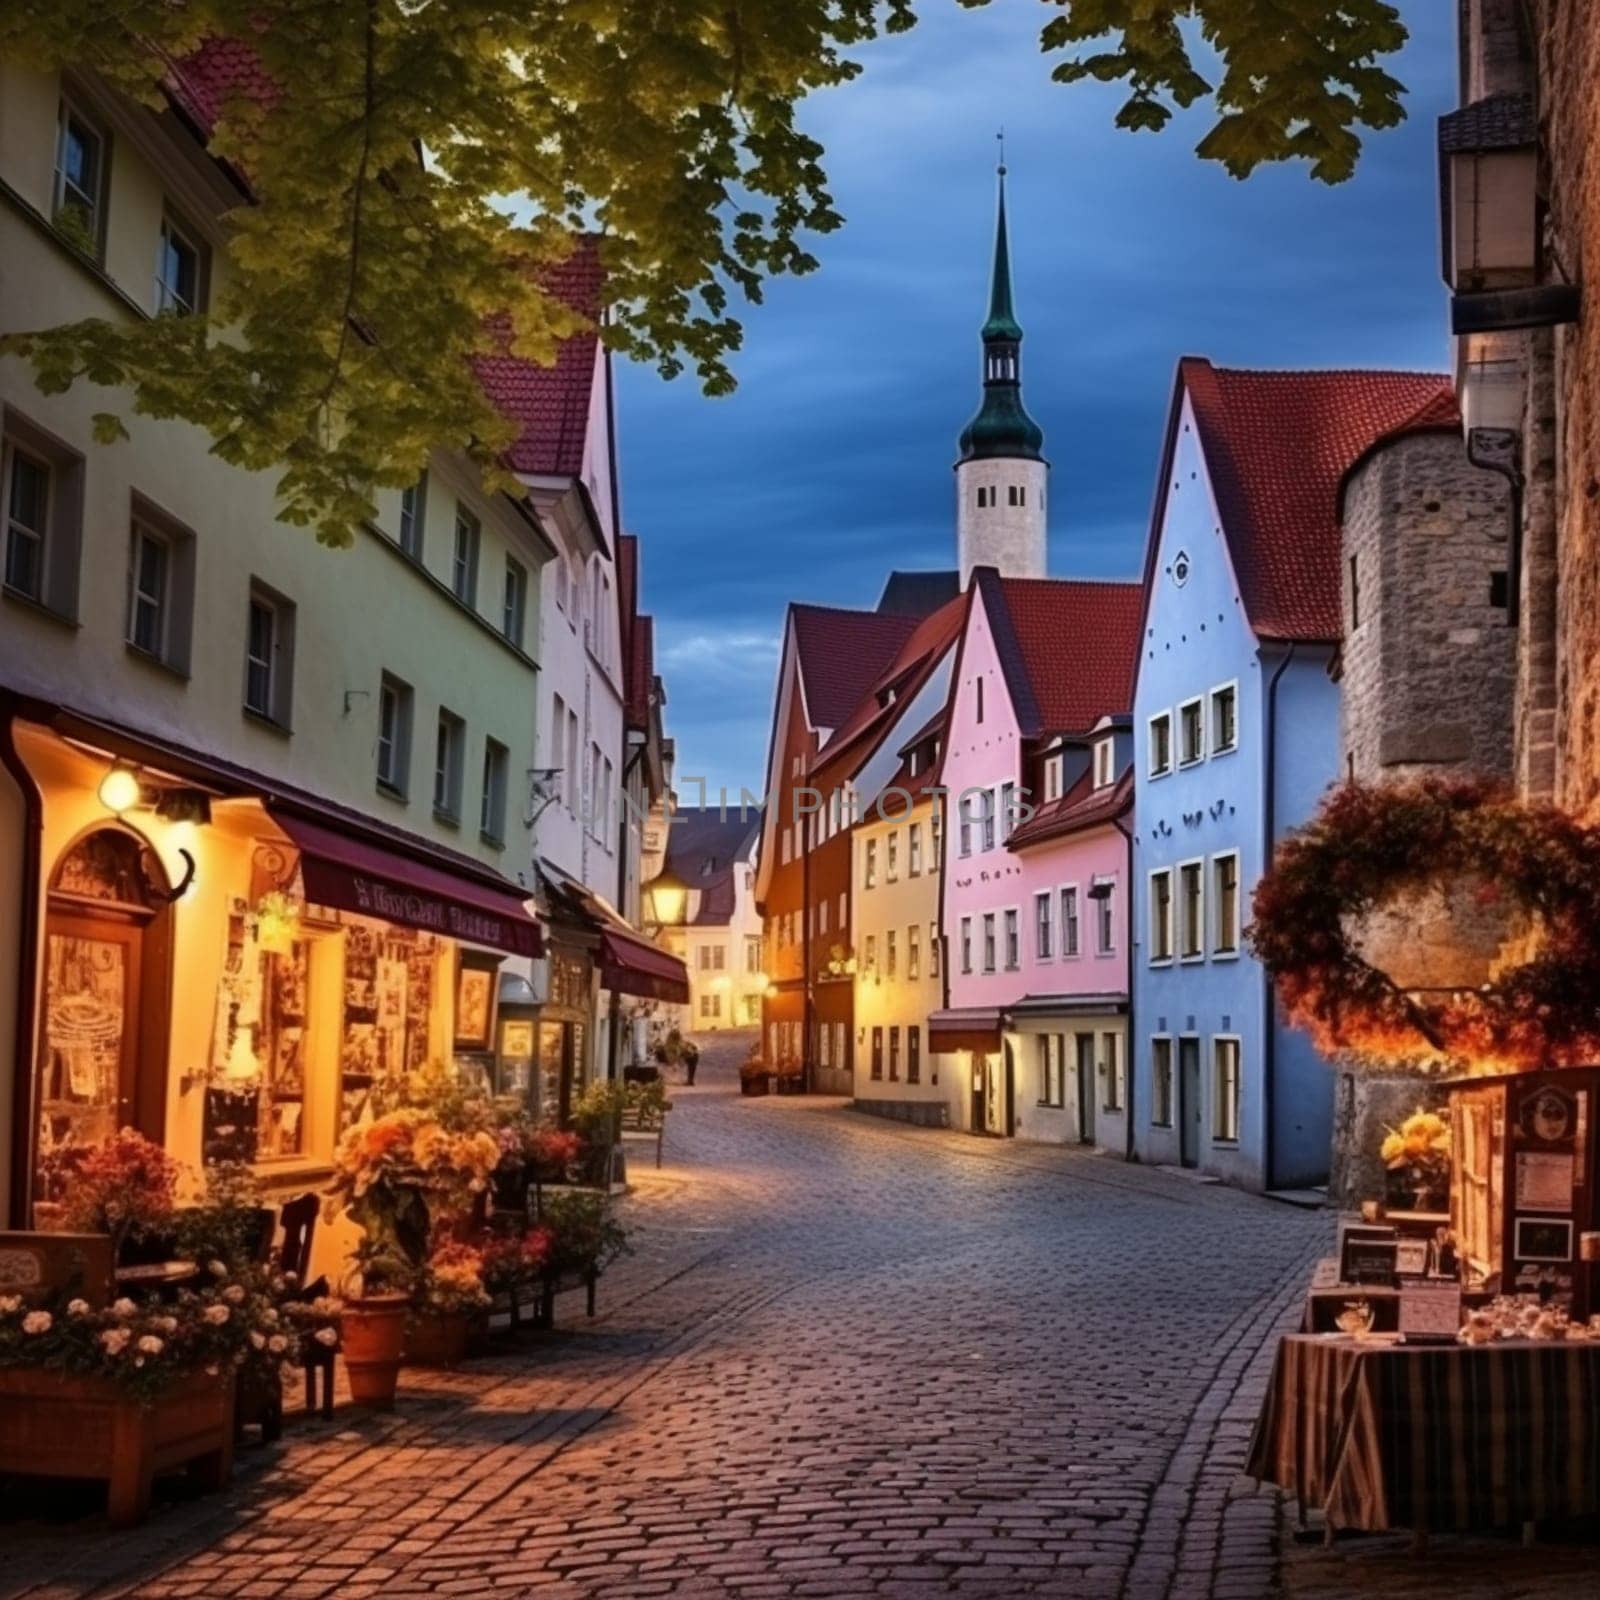 Enchanting Beauty of Tallinn by Sahin